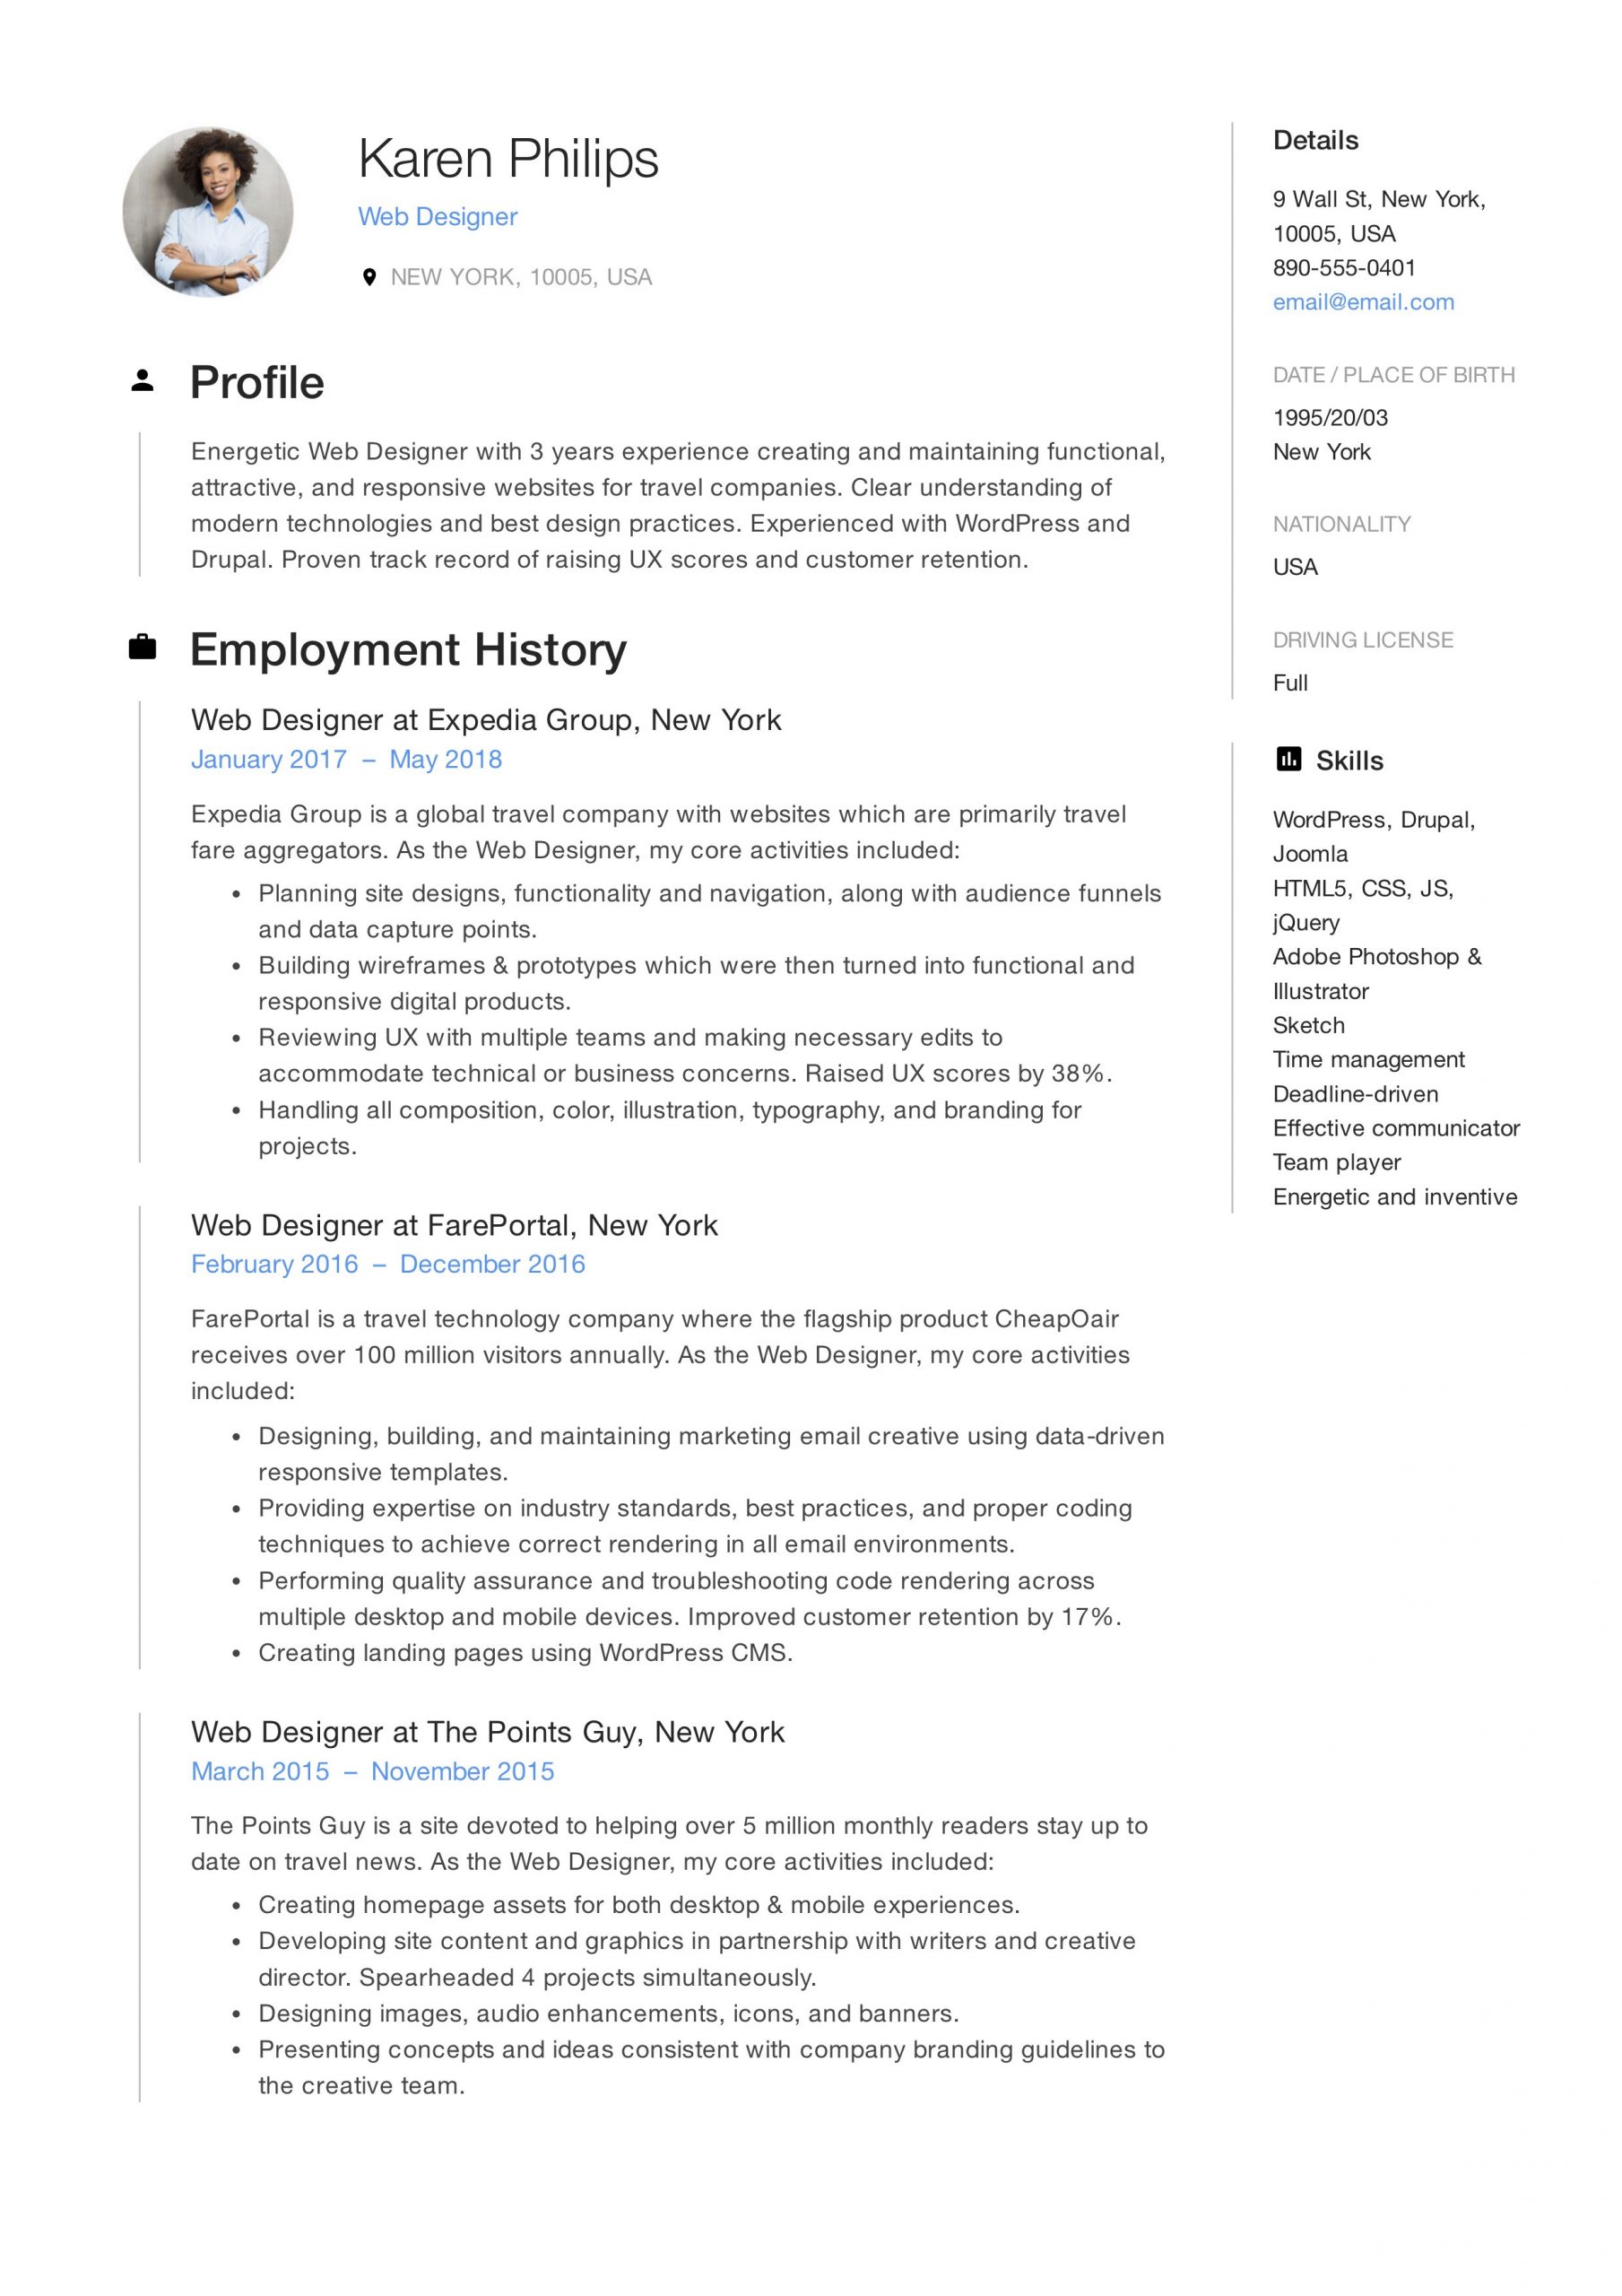 Sample Resume for asp Net Developer Fresher Resume for Web Developer Fresher Web Developer Resume Sample